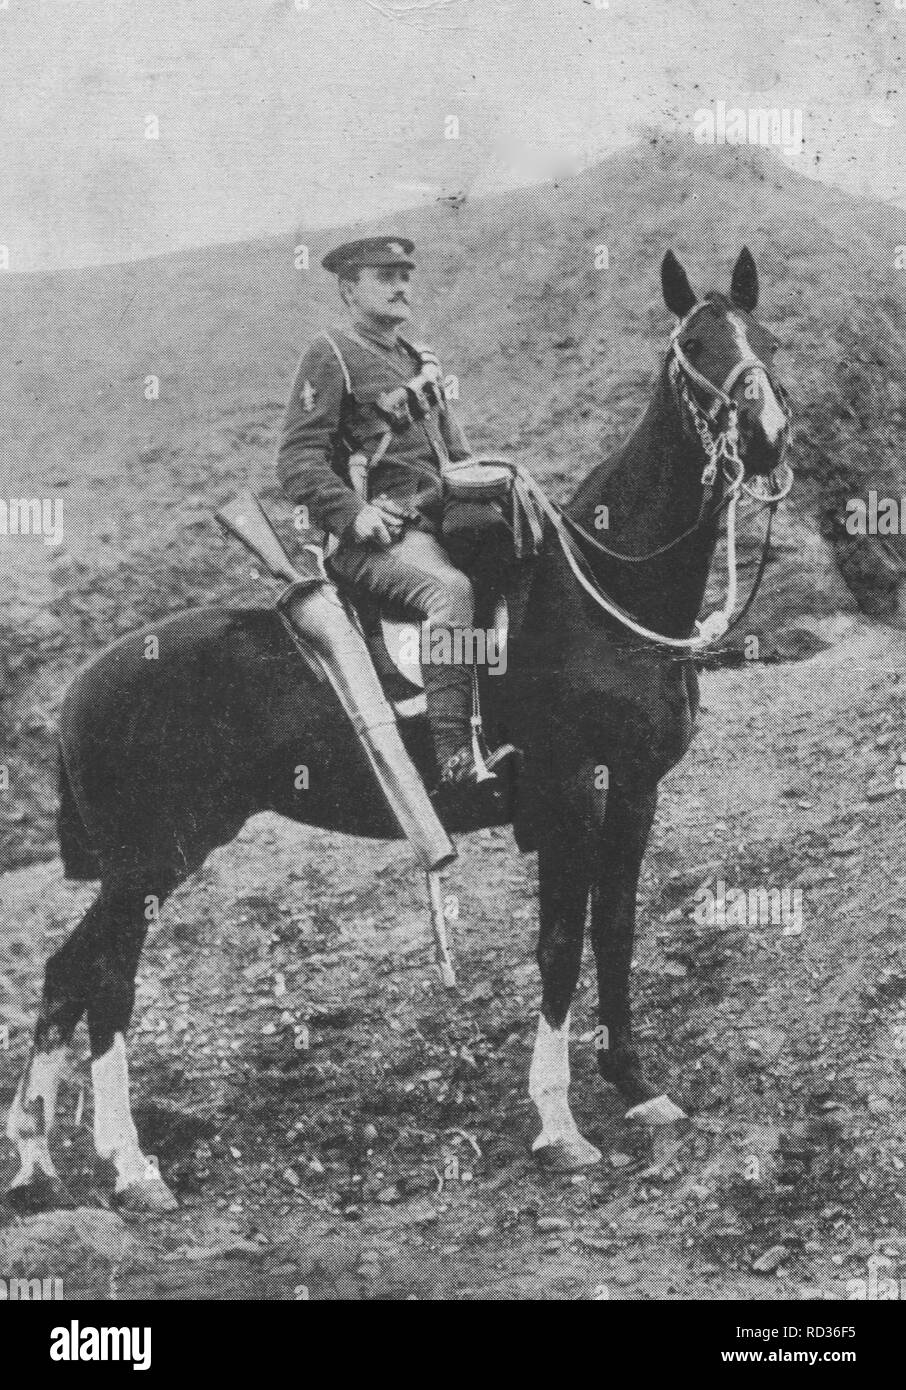 Czech soldier WW2 Stock Photo